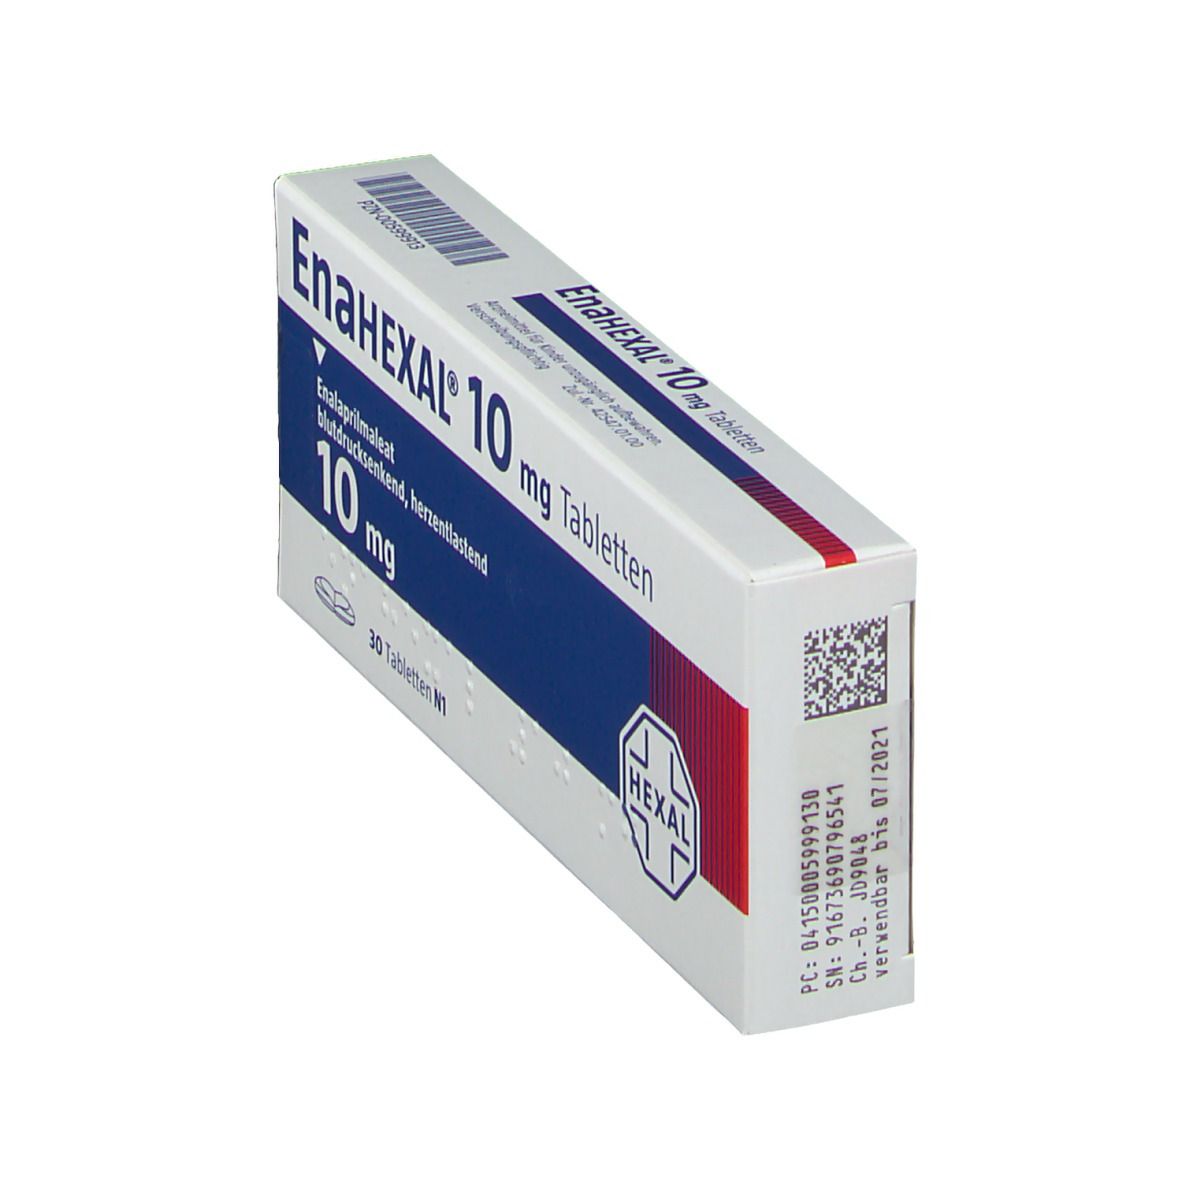 ENAHEXAL 10 mg Tabletten